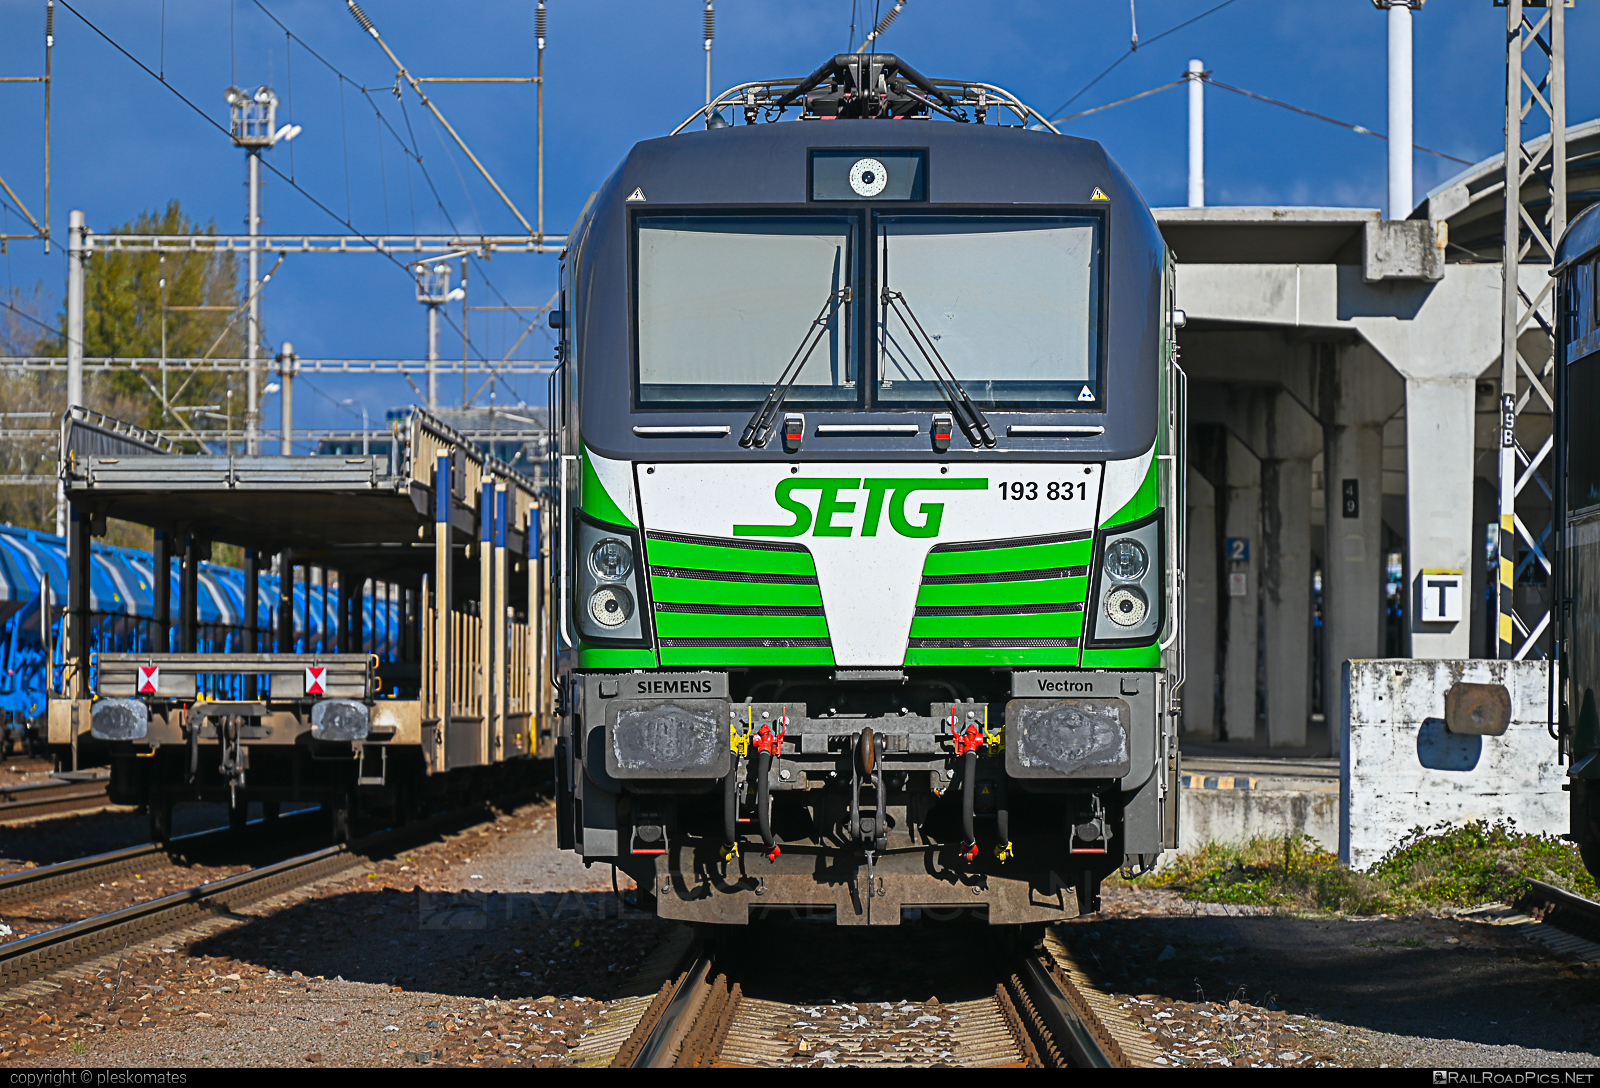 Siemens Vectron AC - 193 831 operated by Salzburger Eisenbahn Transportlogistik GmbH #SalzburgerEisenbahnTransportlogistik #SalzburgerEisenbahnTransportlogistikGmbH #ell #ellgermany #eloc #europeanlocomotiveleasing #setg #siemens #siemensVectron #siemensVectronAC #vectron #vectronAC